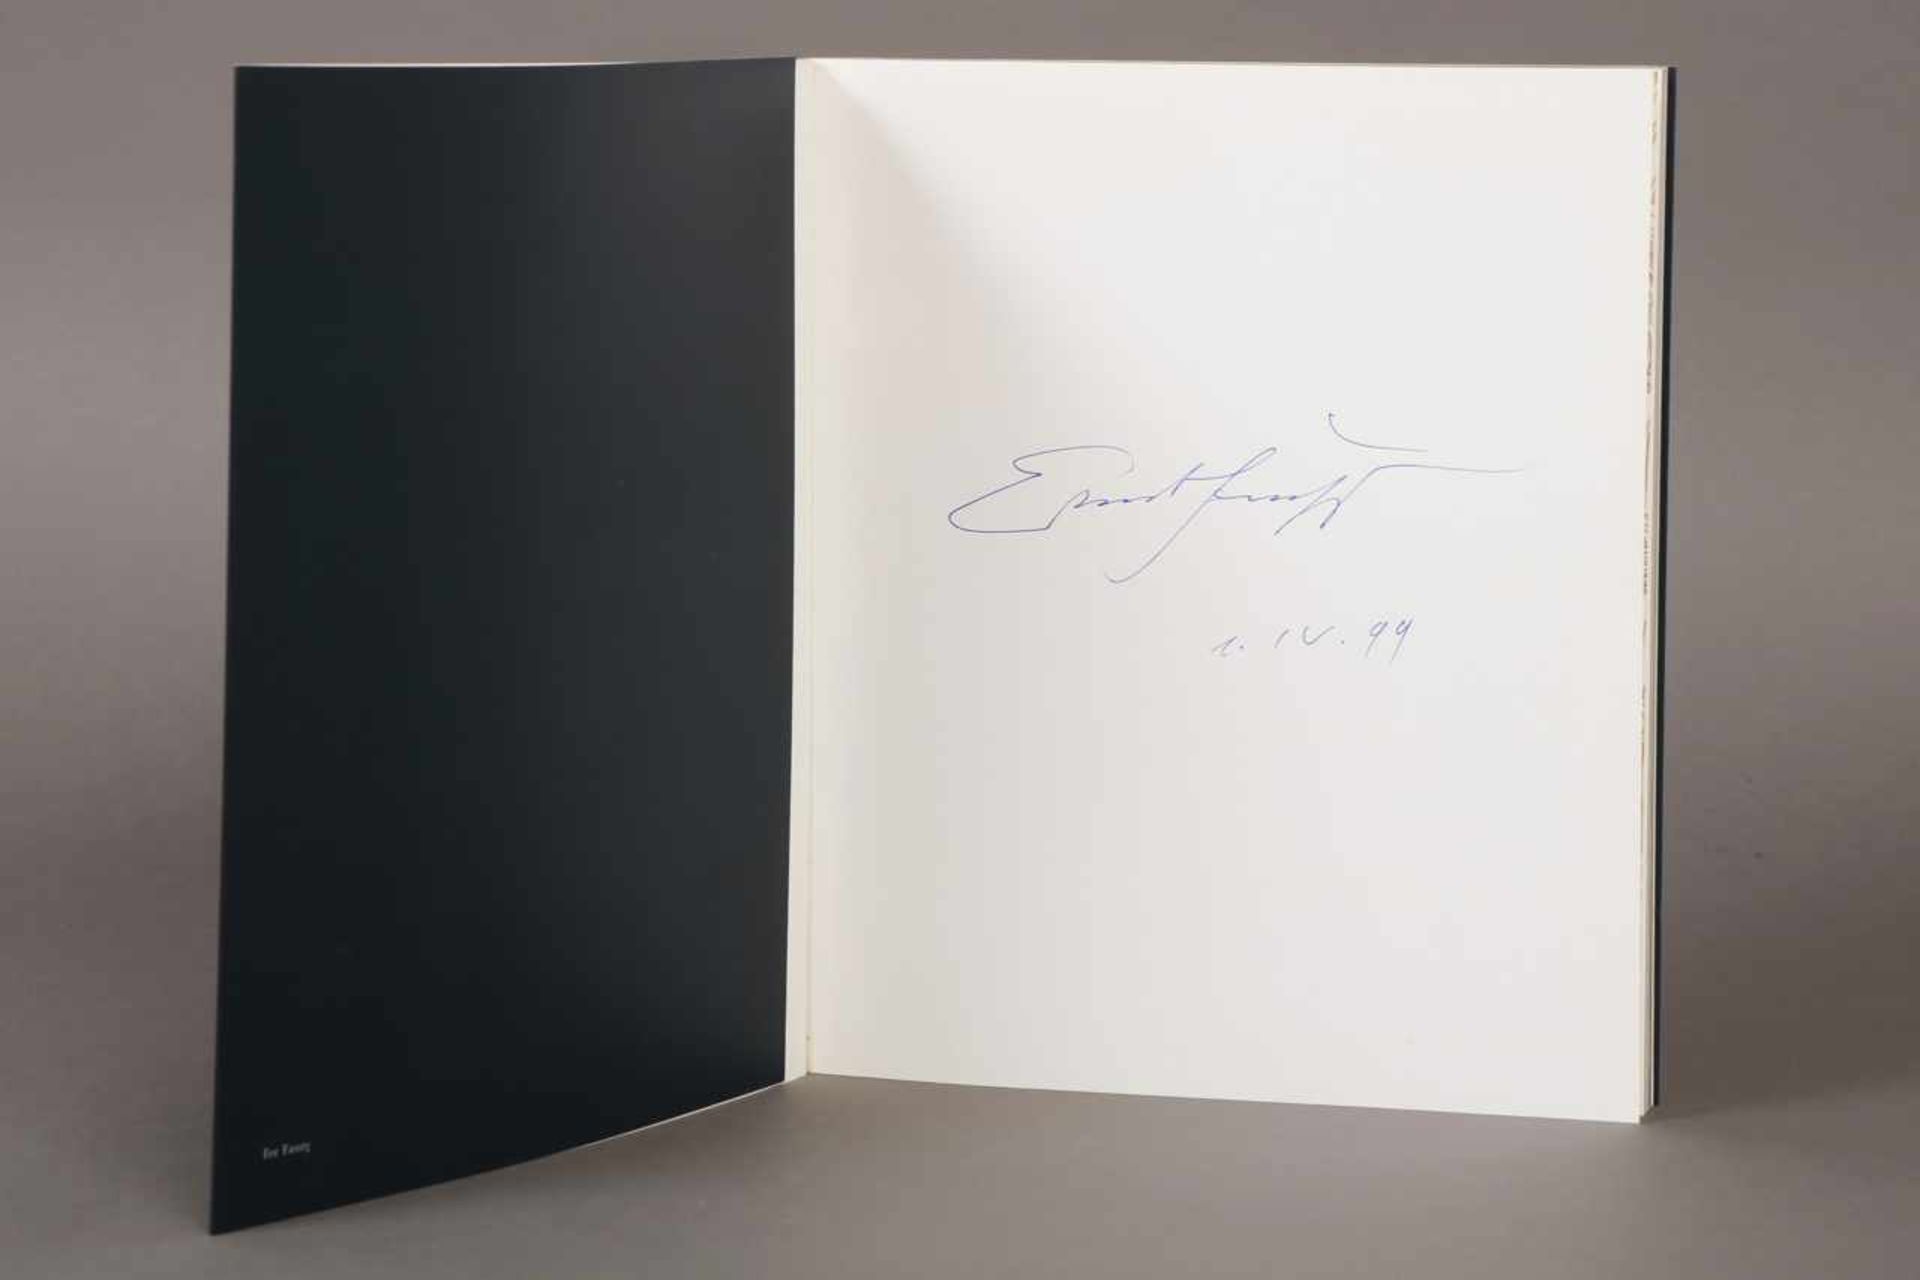 Buch, Ernst Fuchs, ¨Fantasia¨ handsigniertes Exemplar, dat. 1999, Artograph Verlag München, Hrsg. - Bild 2 aus 2